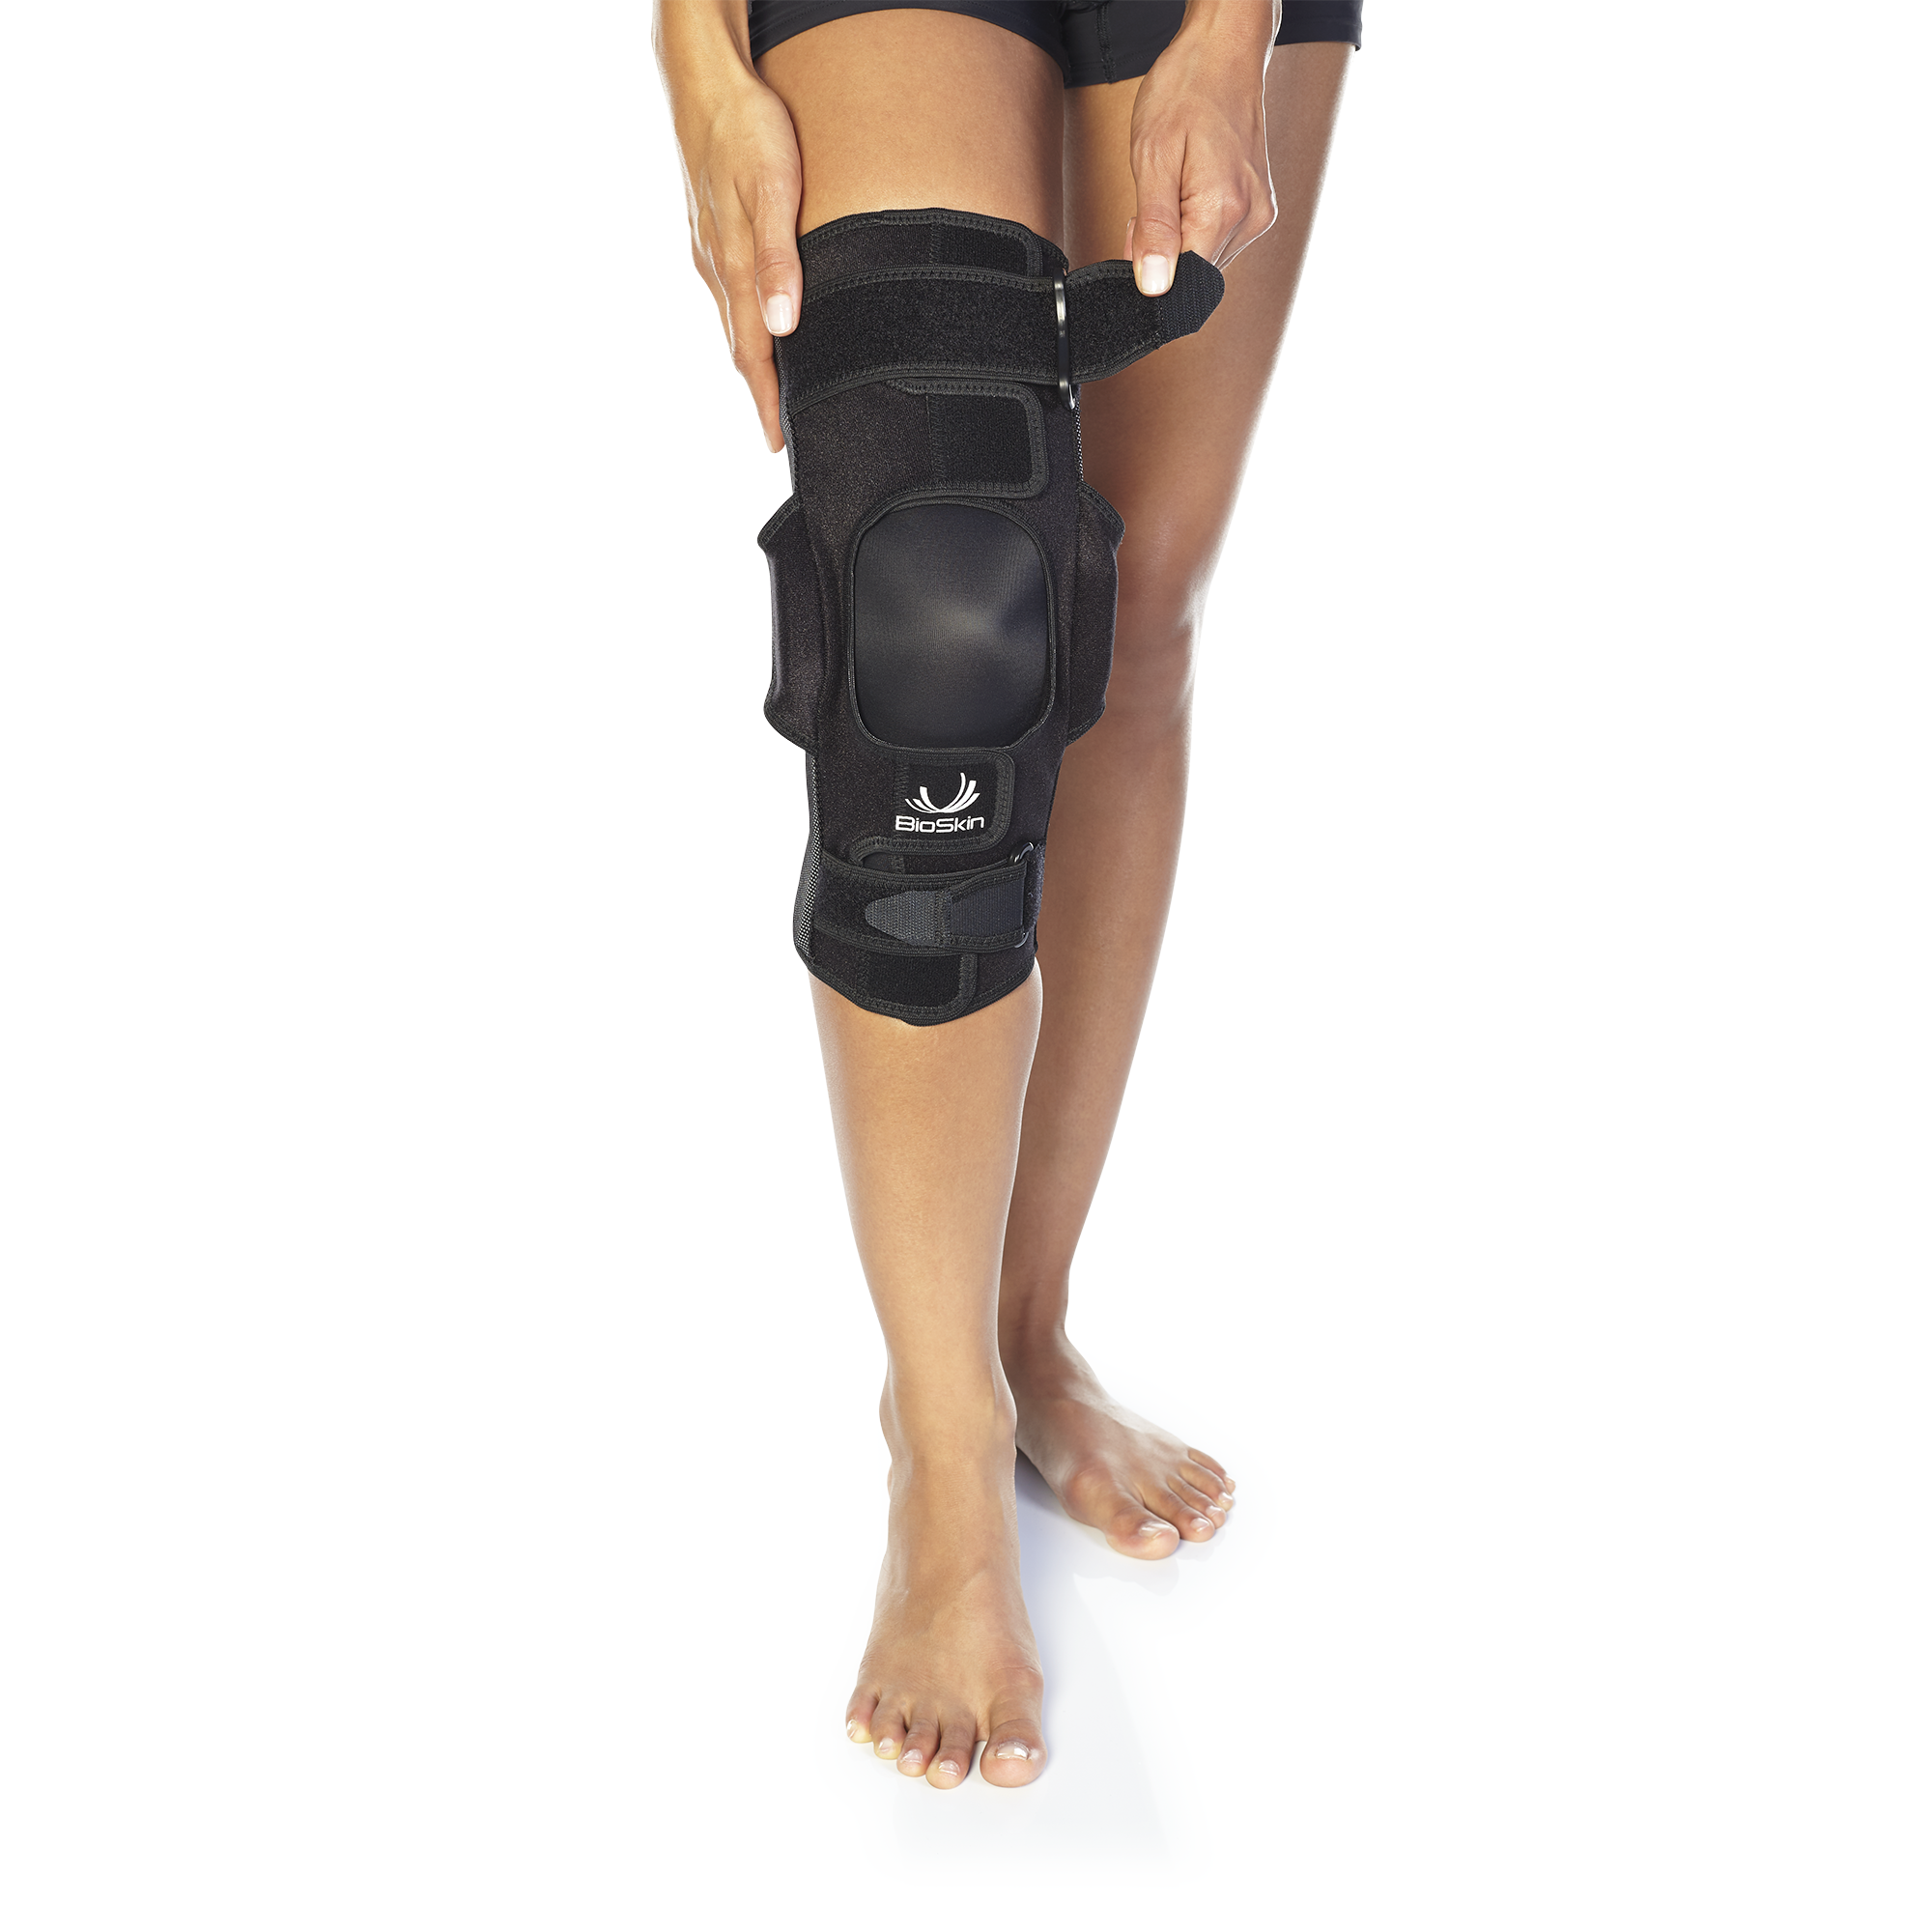 BioSkin Knee Sleeve: Medical-grade Compression & Support